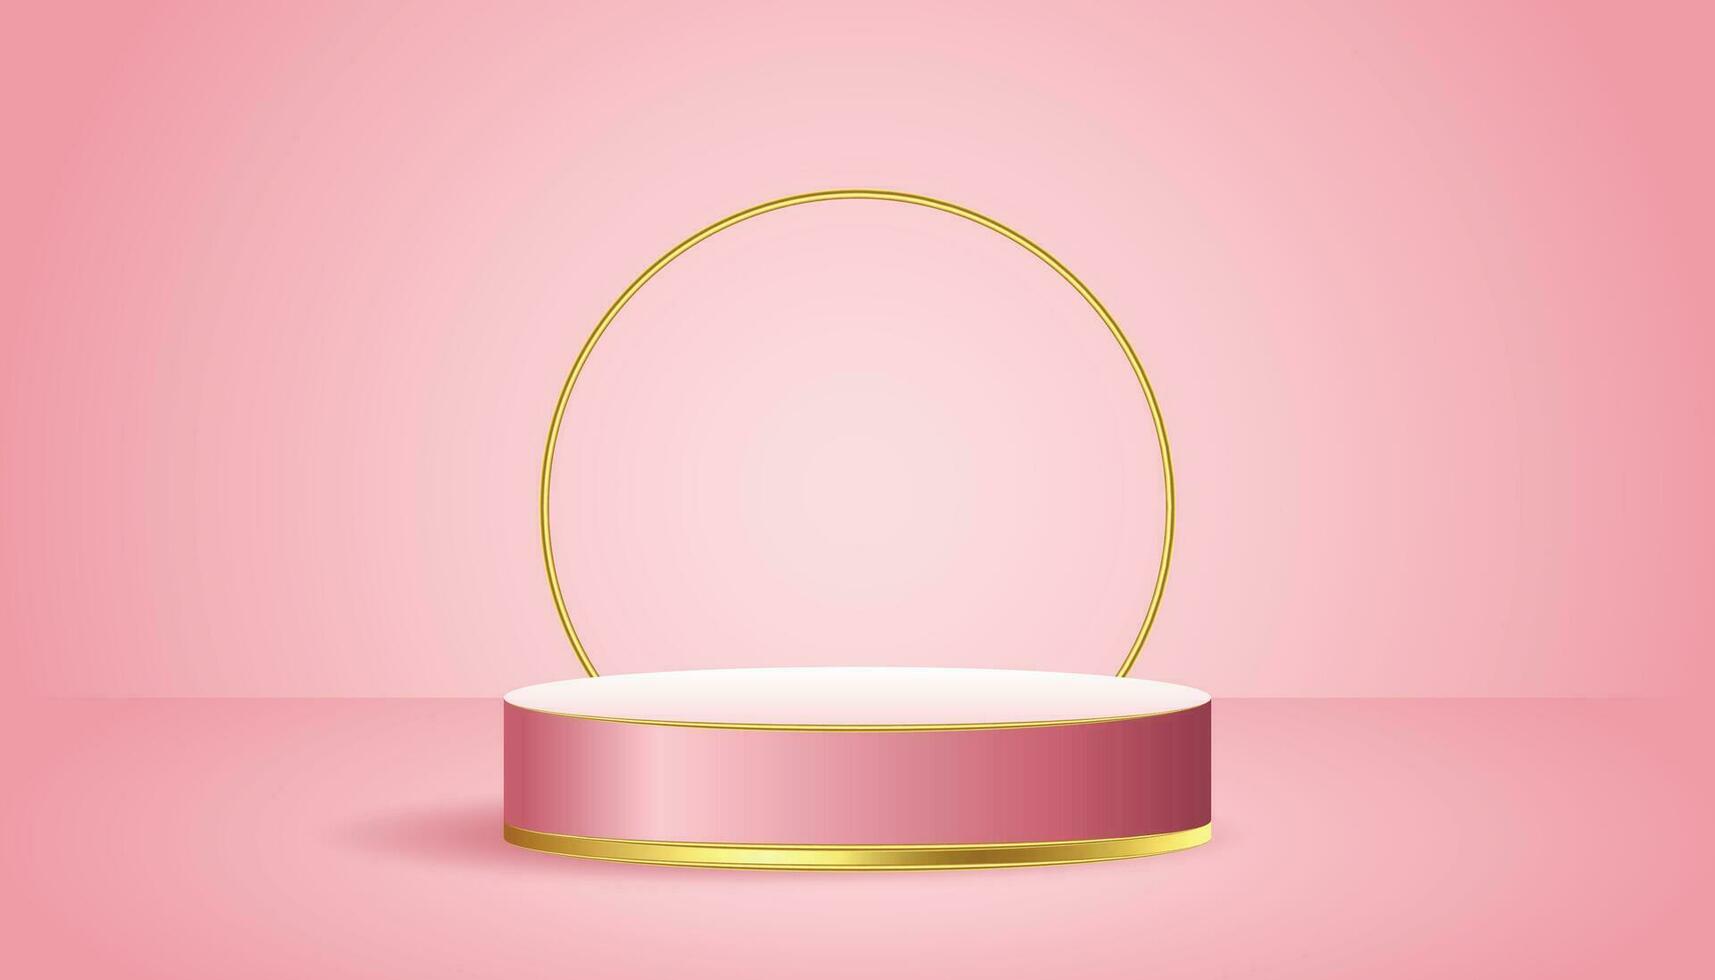 wit roze 3d voetstuk achtergrond met gouden glas ring kader voor kunstmatig Product presentatie vector